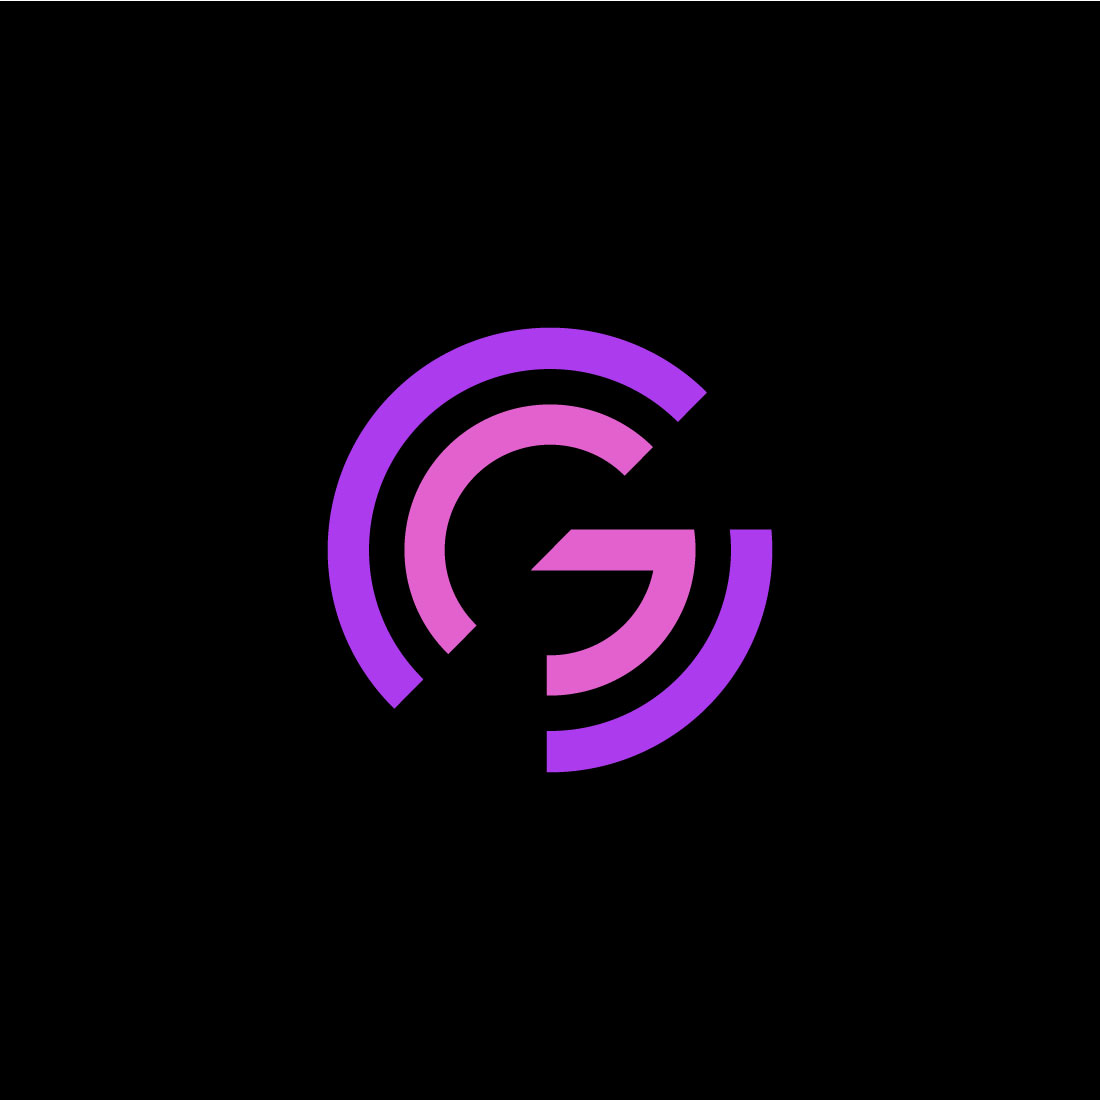 G Letter Monogram Gaming Logo Stock Vector (Royalty Free) 1645700719 |  Shutterstock